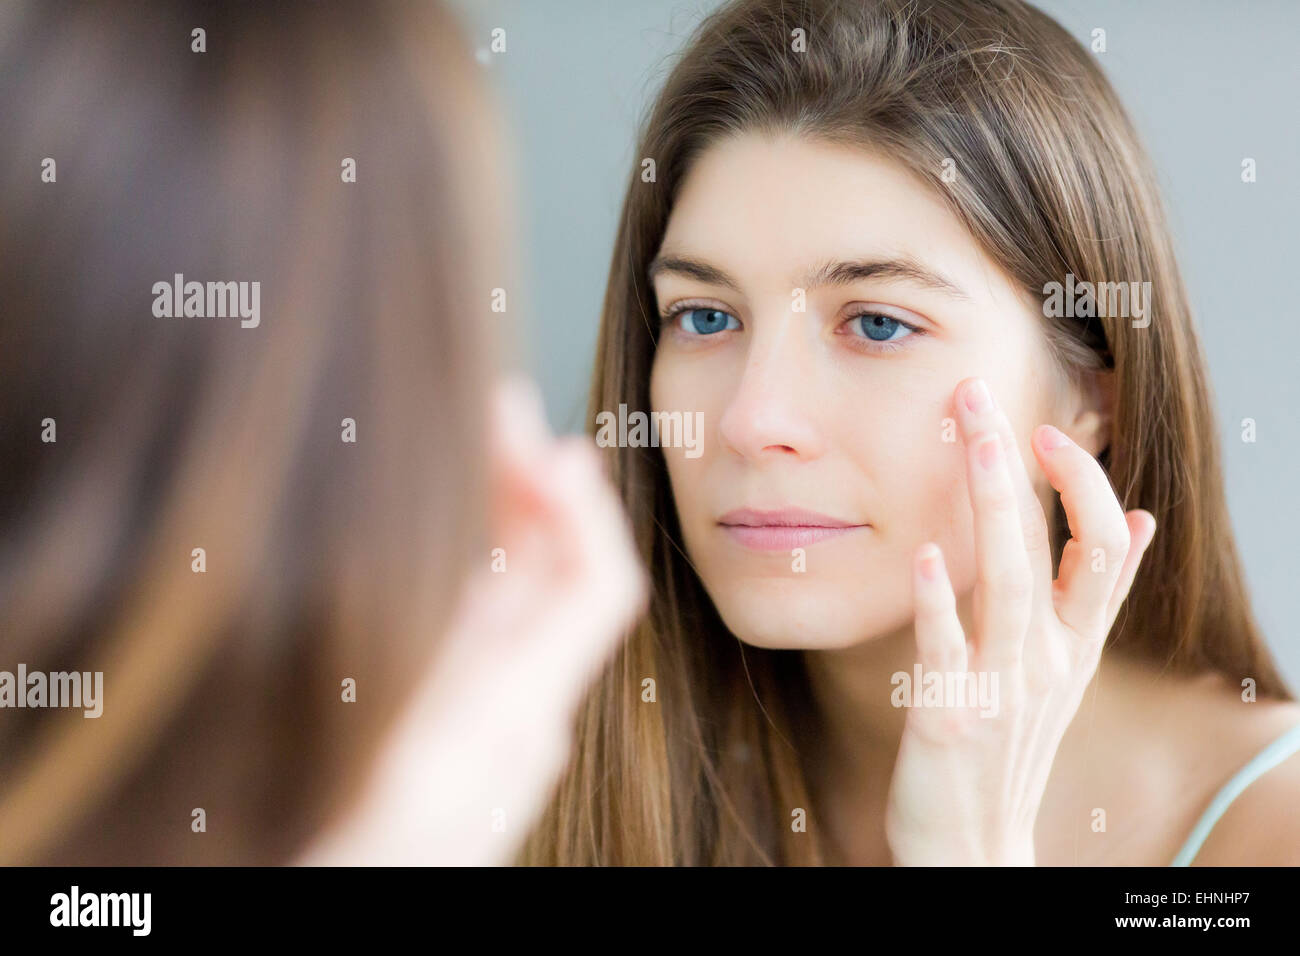 Mujer comprobando su rostro en el espejo. Foto de stock